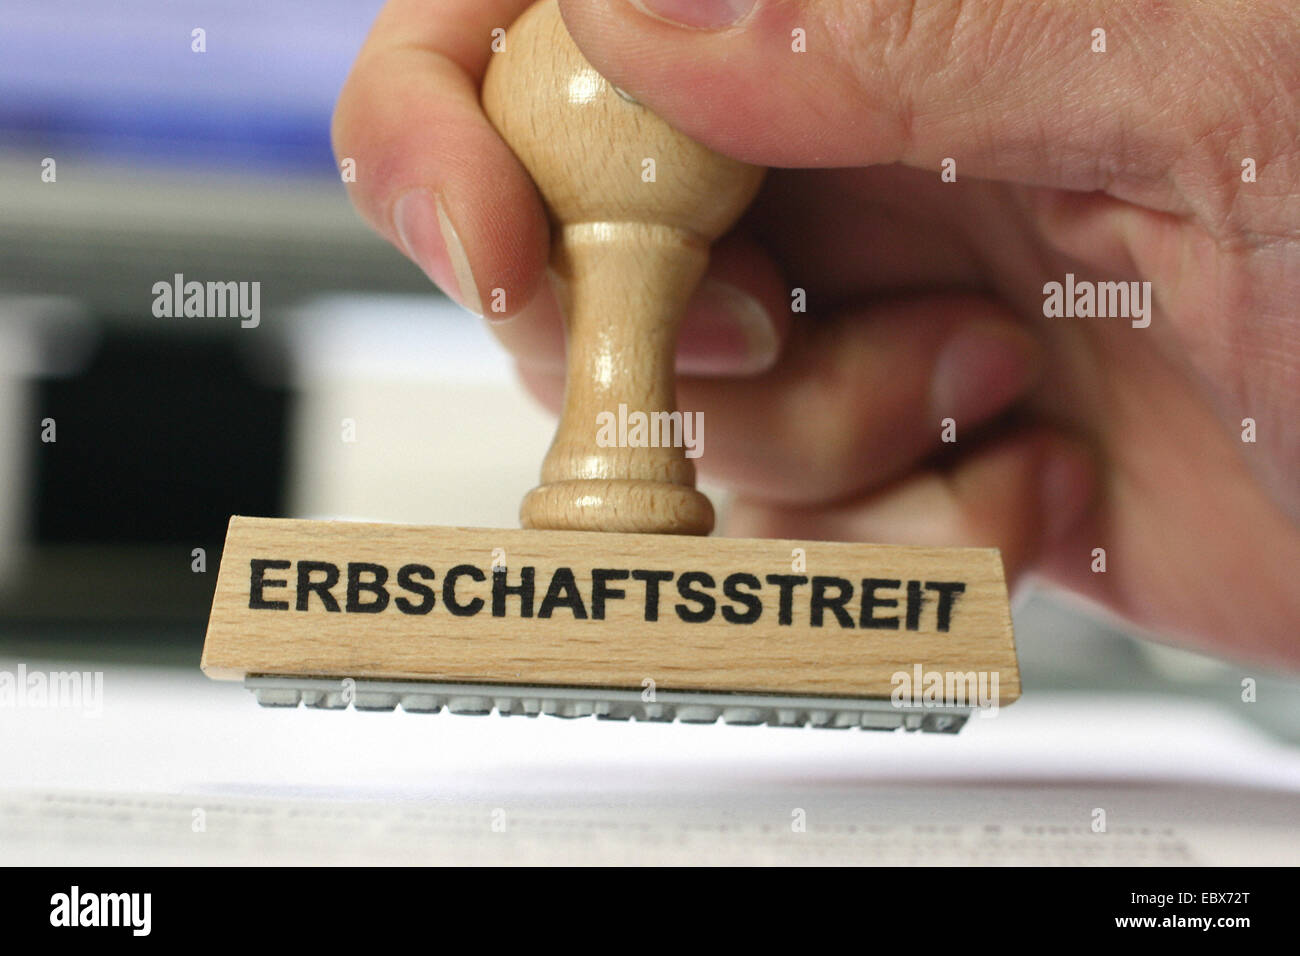 hand with a stamp Erbschaftsstreit, inheritance controversy Stock Photo